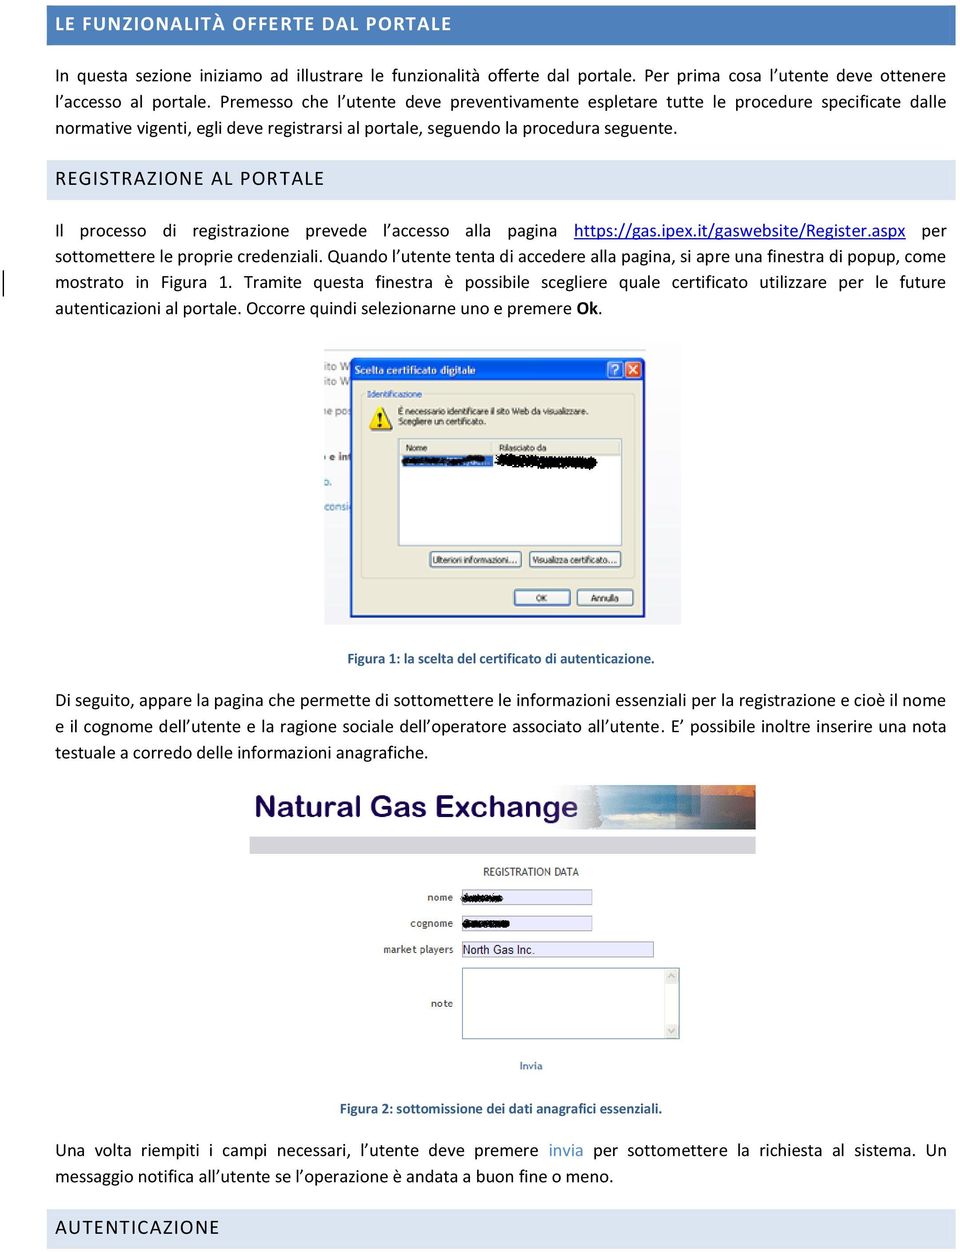 REGISTRAZIONE AL PORTALE Il processo di registrazione prevede l accesso alla pagina https://gas.ipex.it/gaswebsite/register.aspx per sottomettere le proprie credenziali.